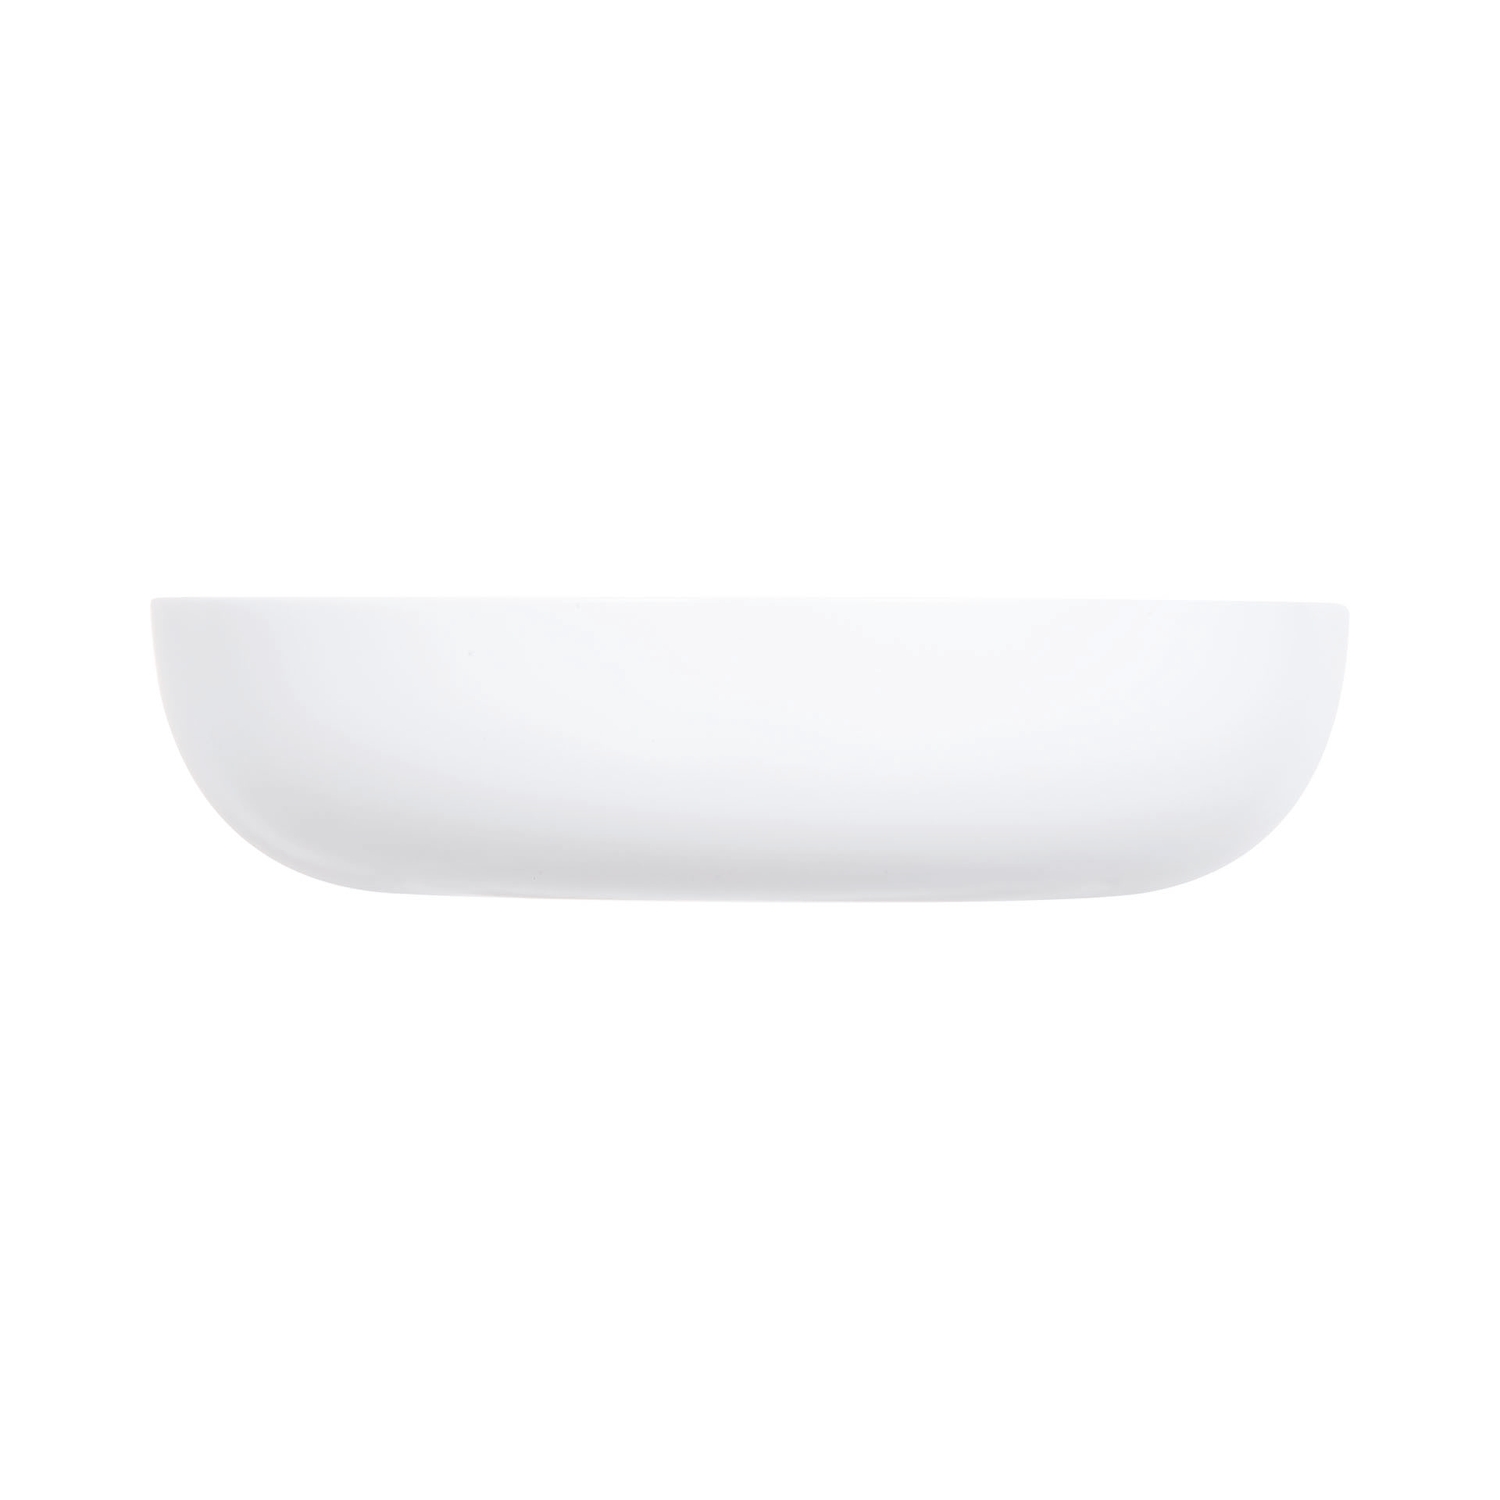 Тарелка для подачи Luminarc Френдс Тайм P6280 17см форма для пельменей вареников кальцоне и пирожков nordic ware 15х8 см пластик серо голубой